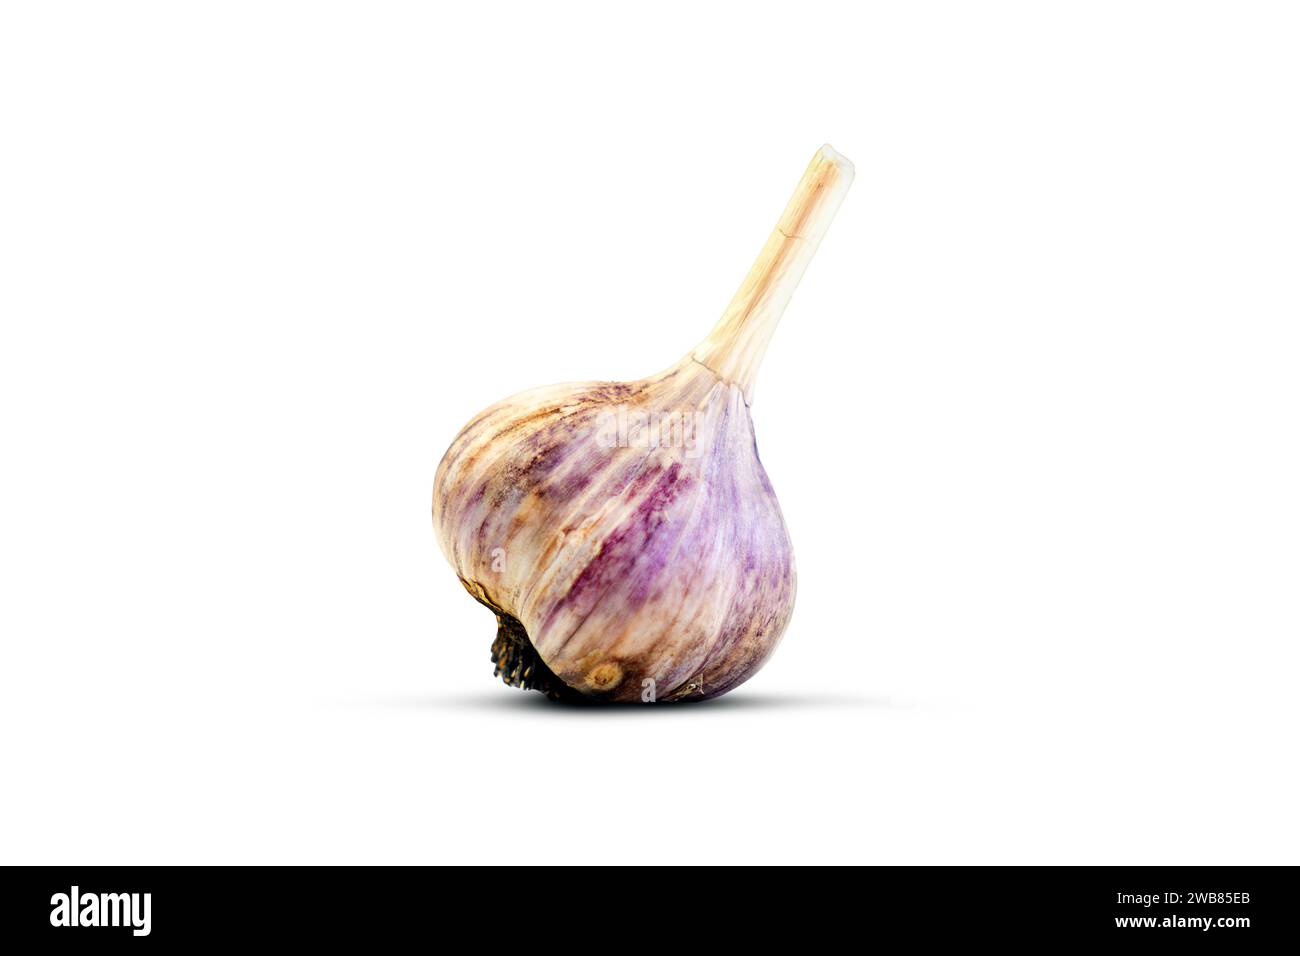 Garlic isolated on white background, Stock Photo